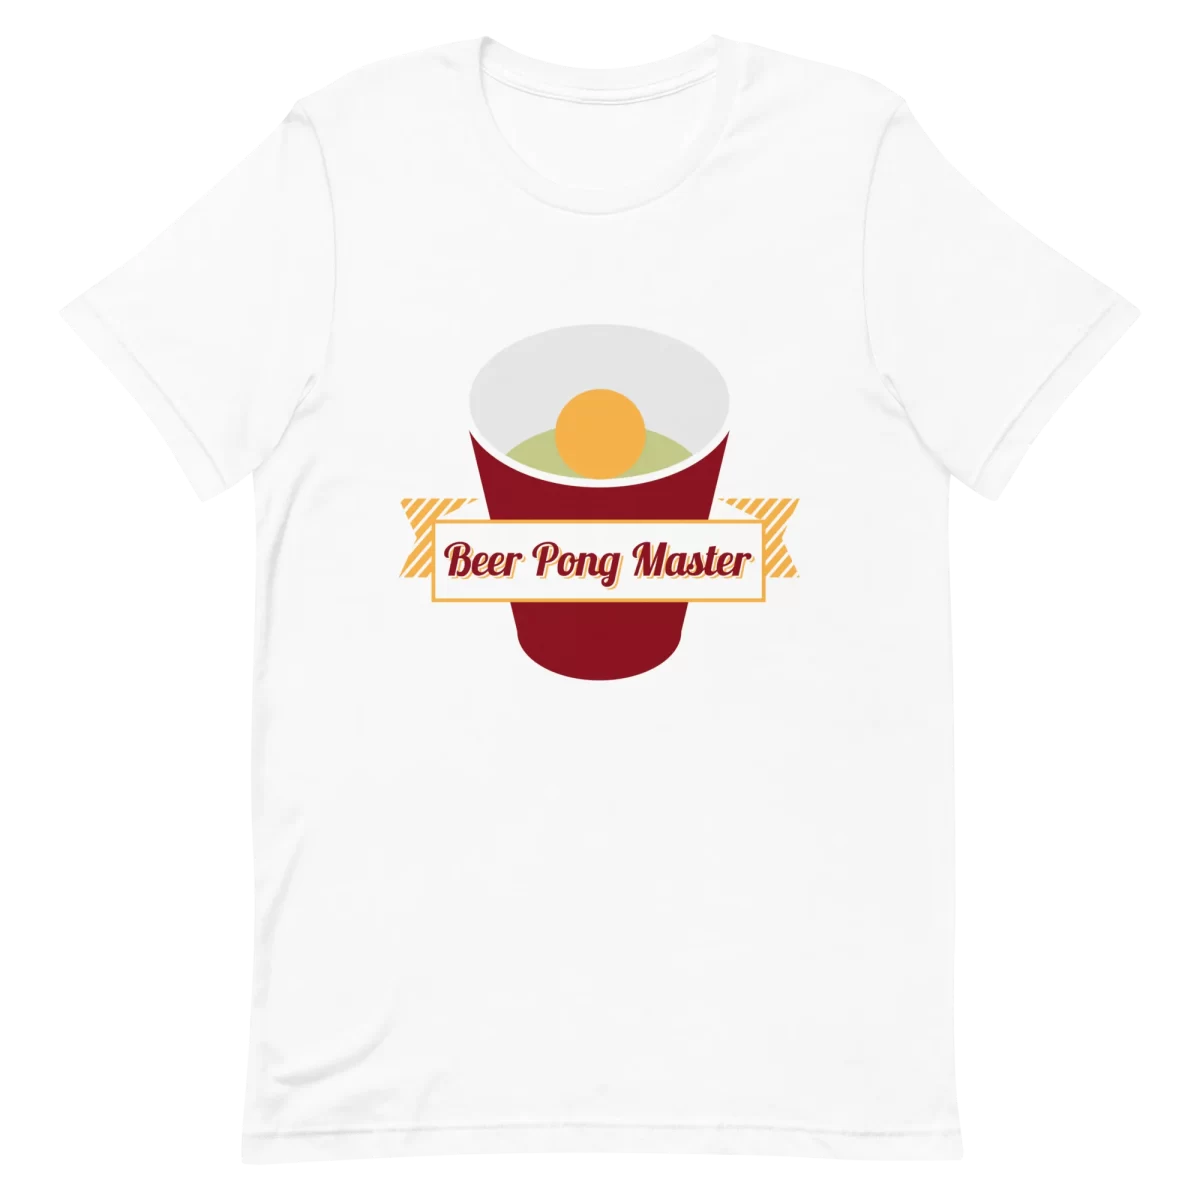 Unisex T-Shirt - Beer Pong Master - White